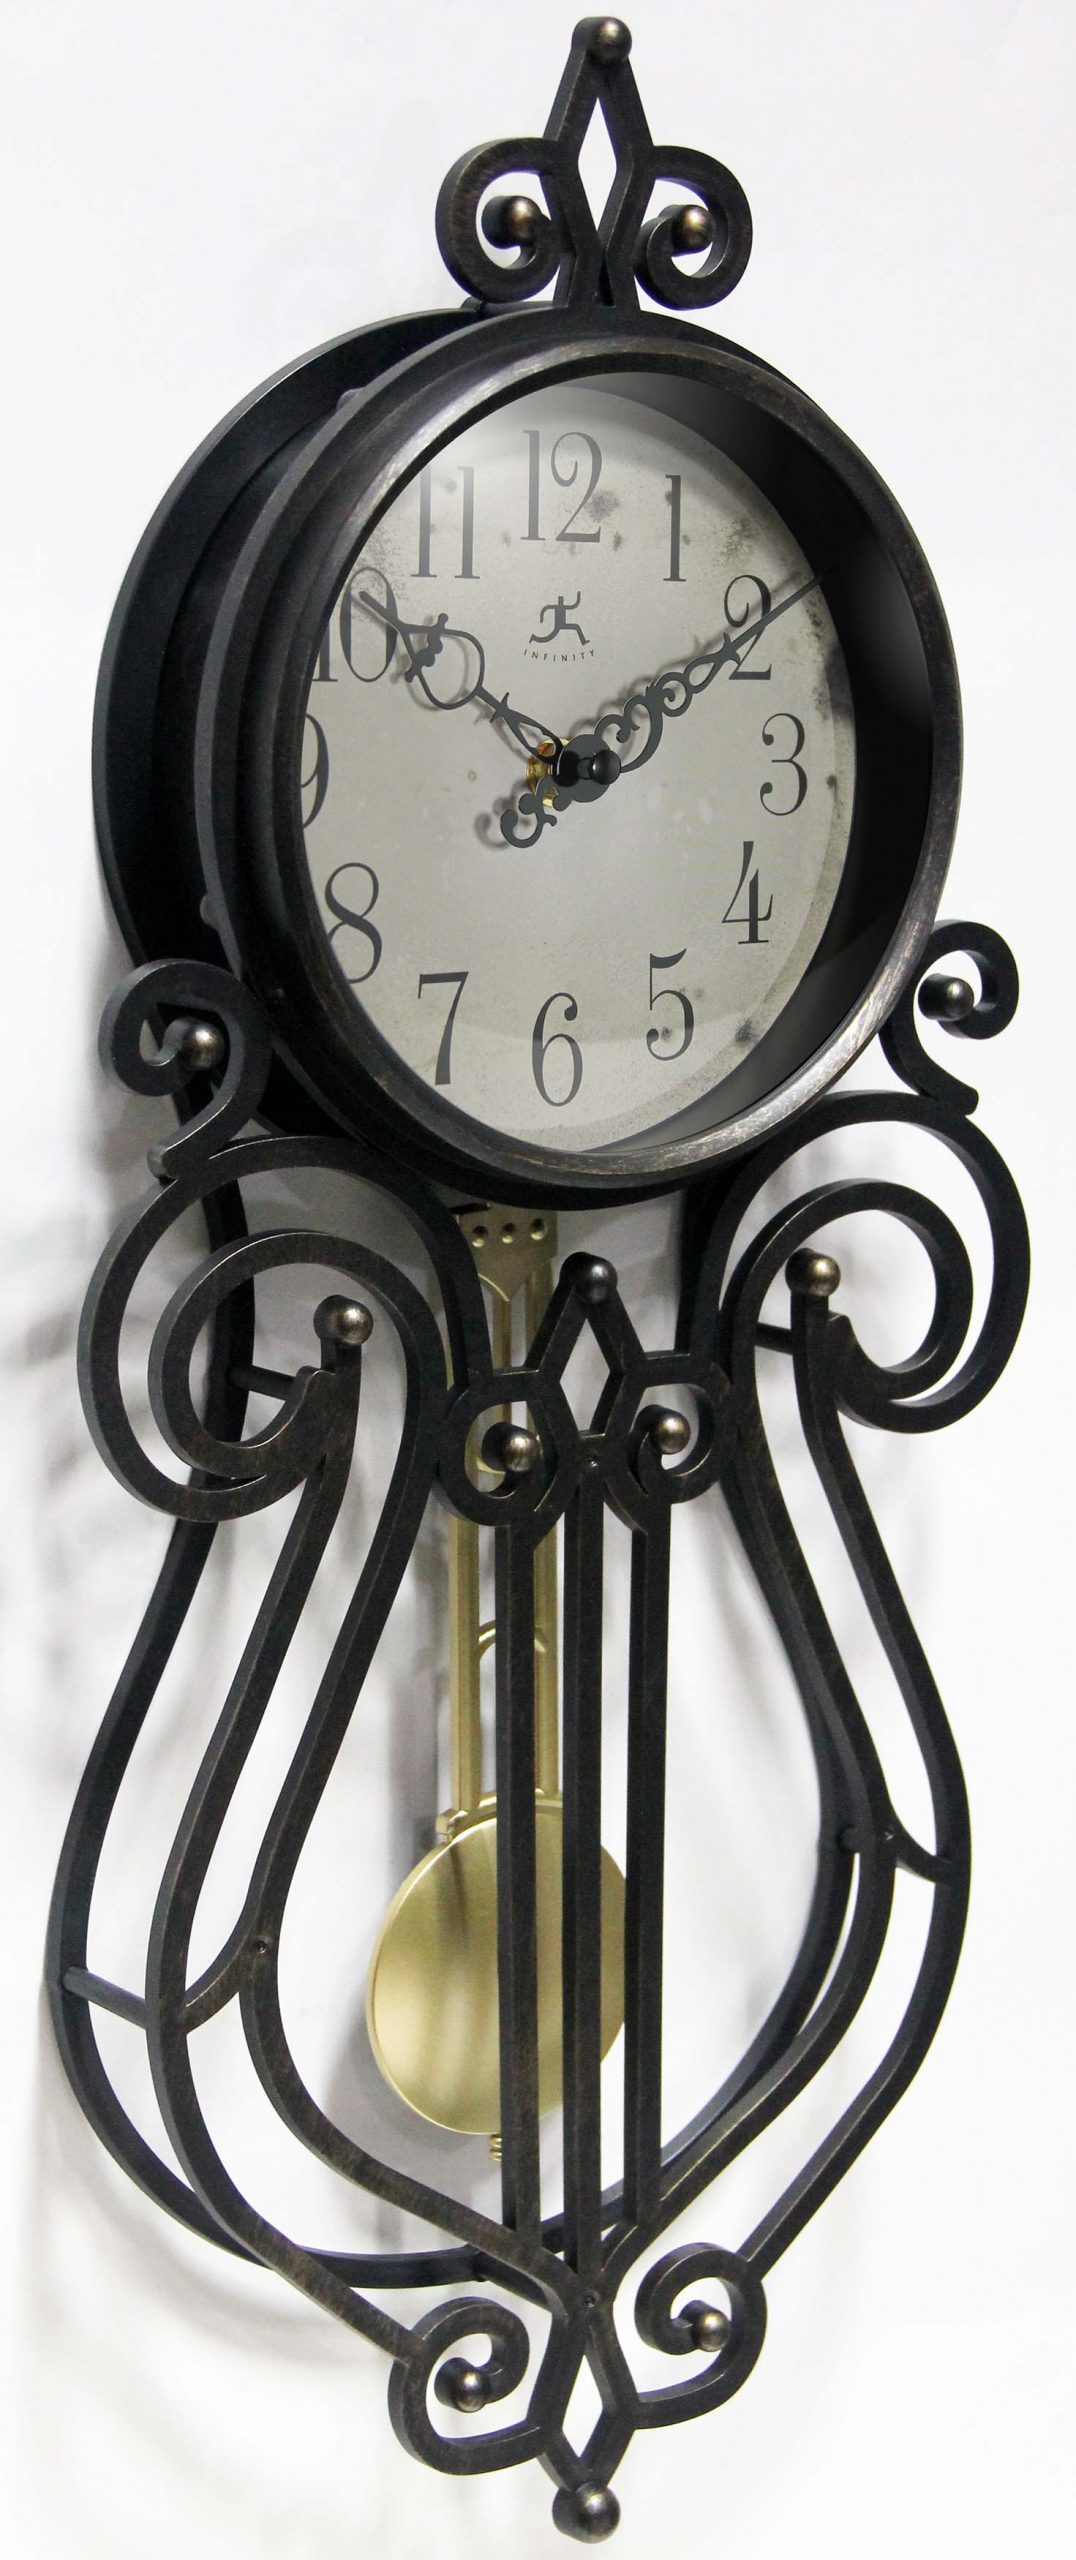 Pendulum Wall Clock